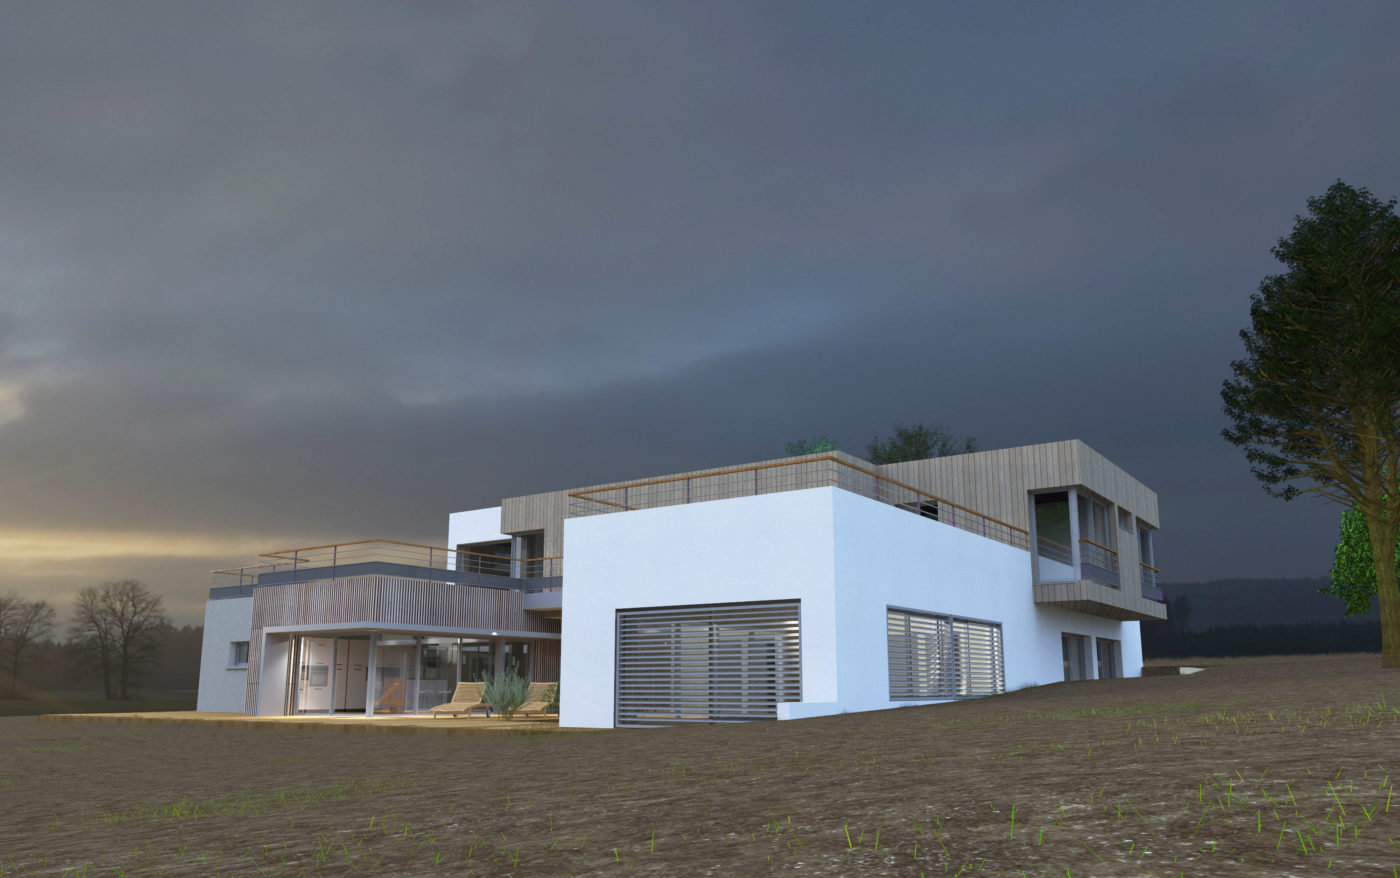 Philippe_Zerbib_Architecte_construction_maisons_contemporaines_ossature_bois_projet_maison_Berinde_View 10_12